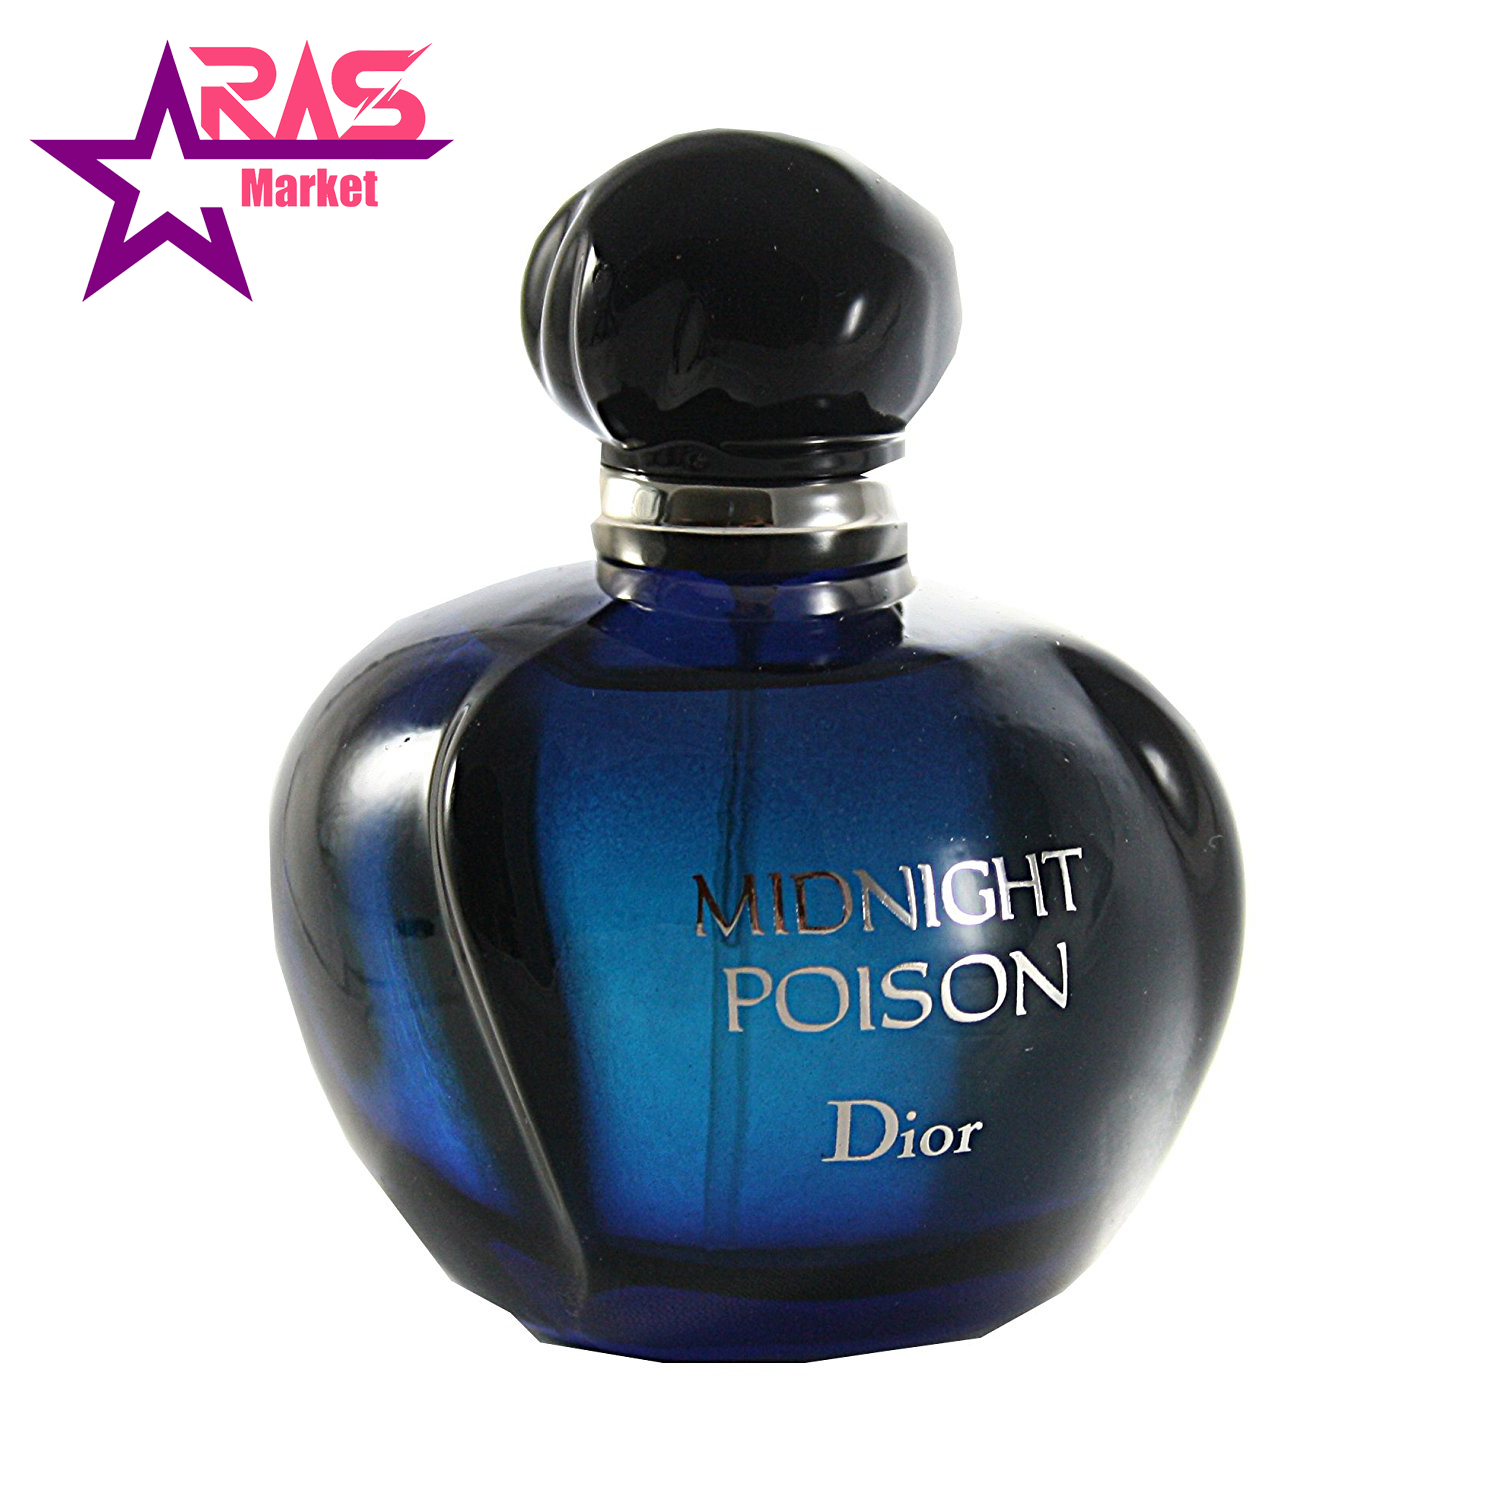 Миднайт пуазон. Духи Christian Dior Midnight Poison. Dior Midnight Poison 100ml EDP. Midnight Poison 100 мл. Dior parfumes / Dior parfumes/Christian Dior Midnight Poison/100 мл.